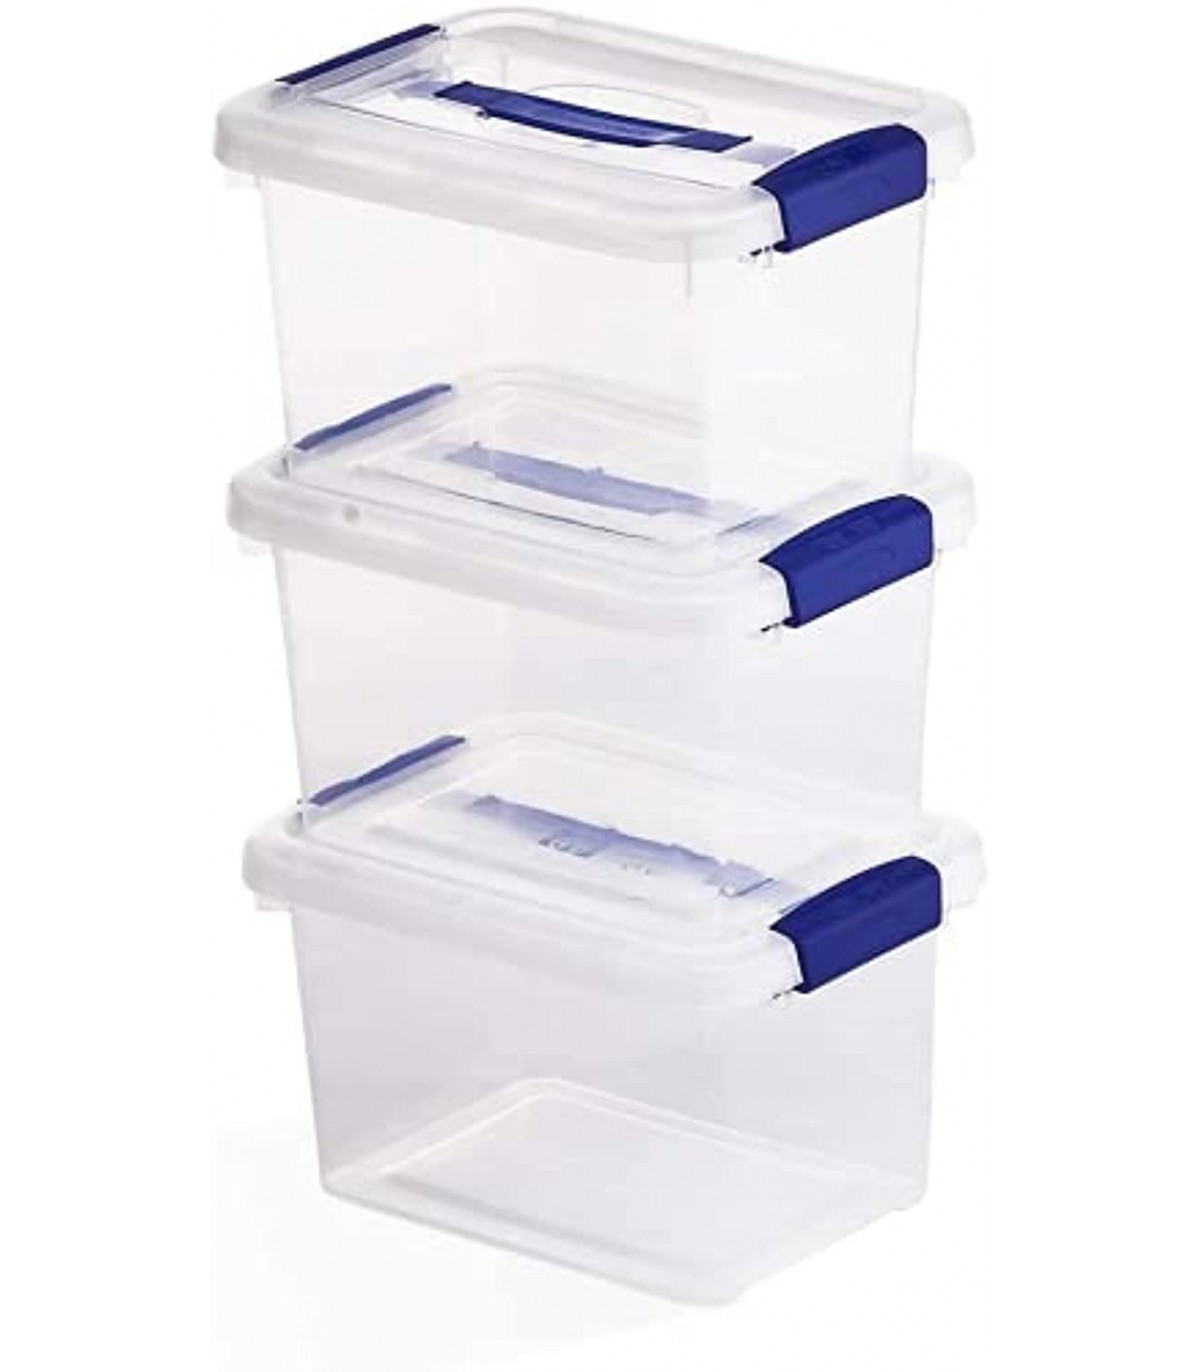 TIENDA EURASIA® Cajas de Almacenaje de Plastico - Lote 3 Cajas Apilables  con Tapa Abatible y Asas - Ideal para Almacenar los Pro